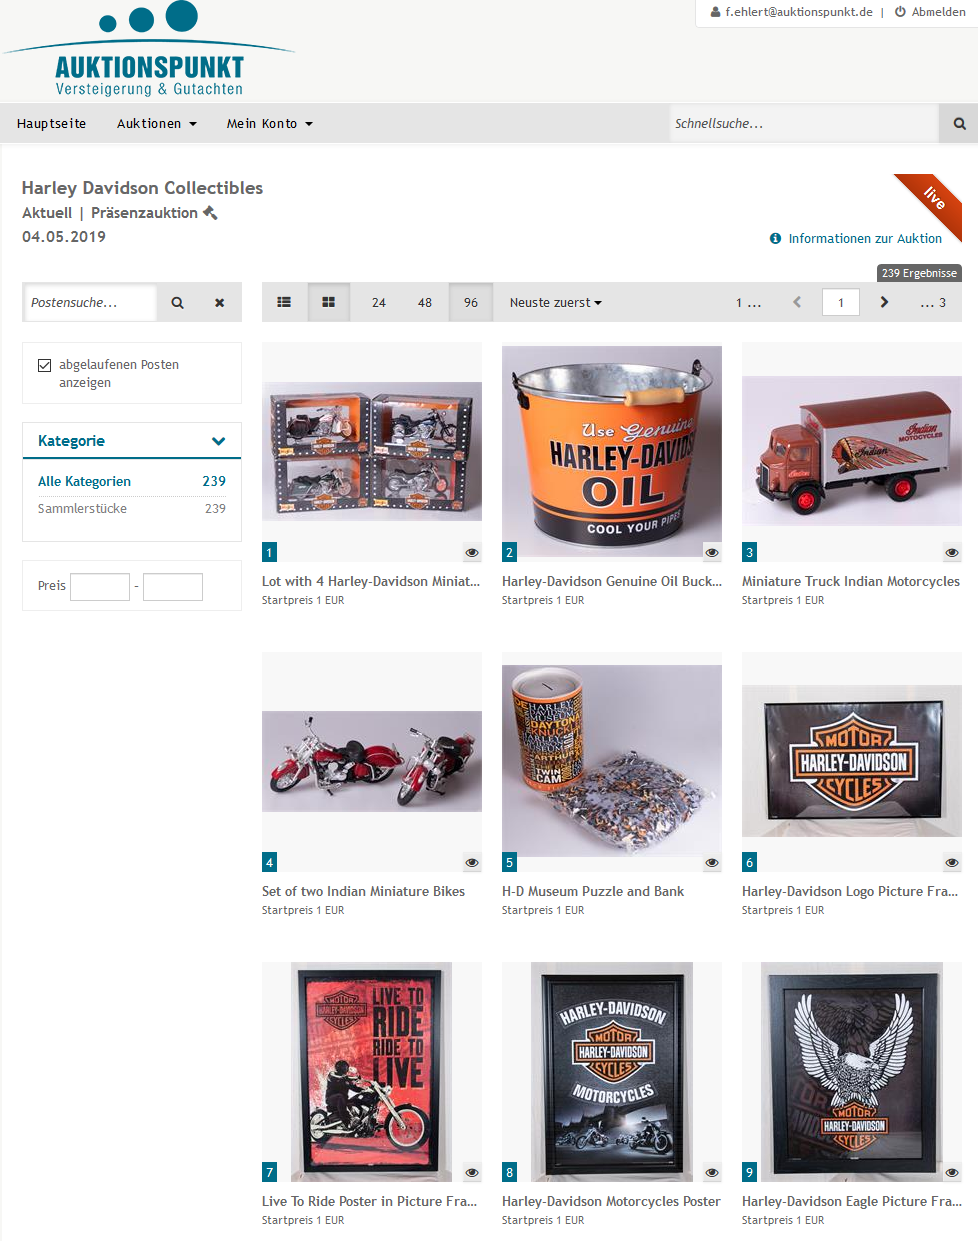 Auktionsportal für Harley-Davidson Auktion